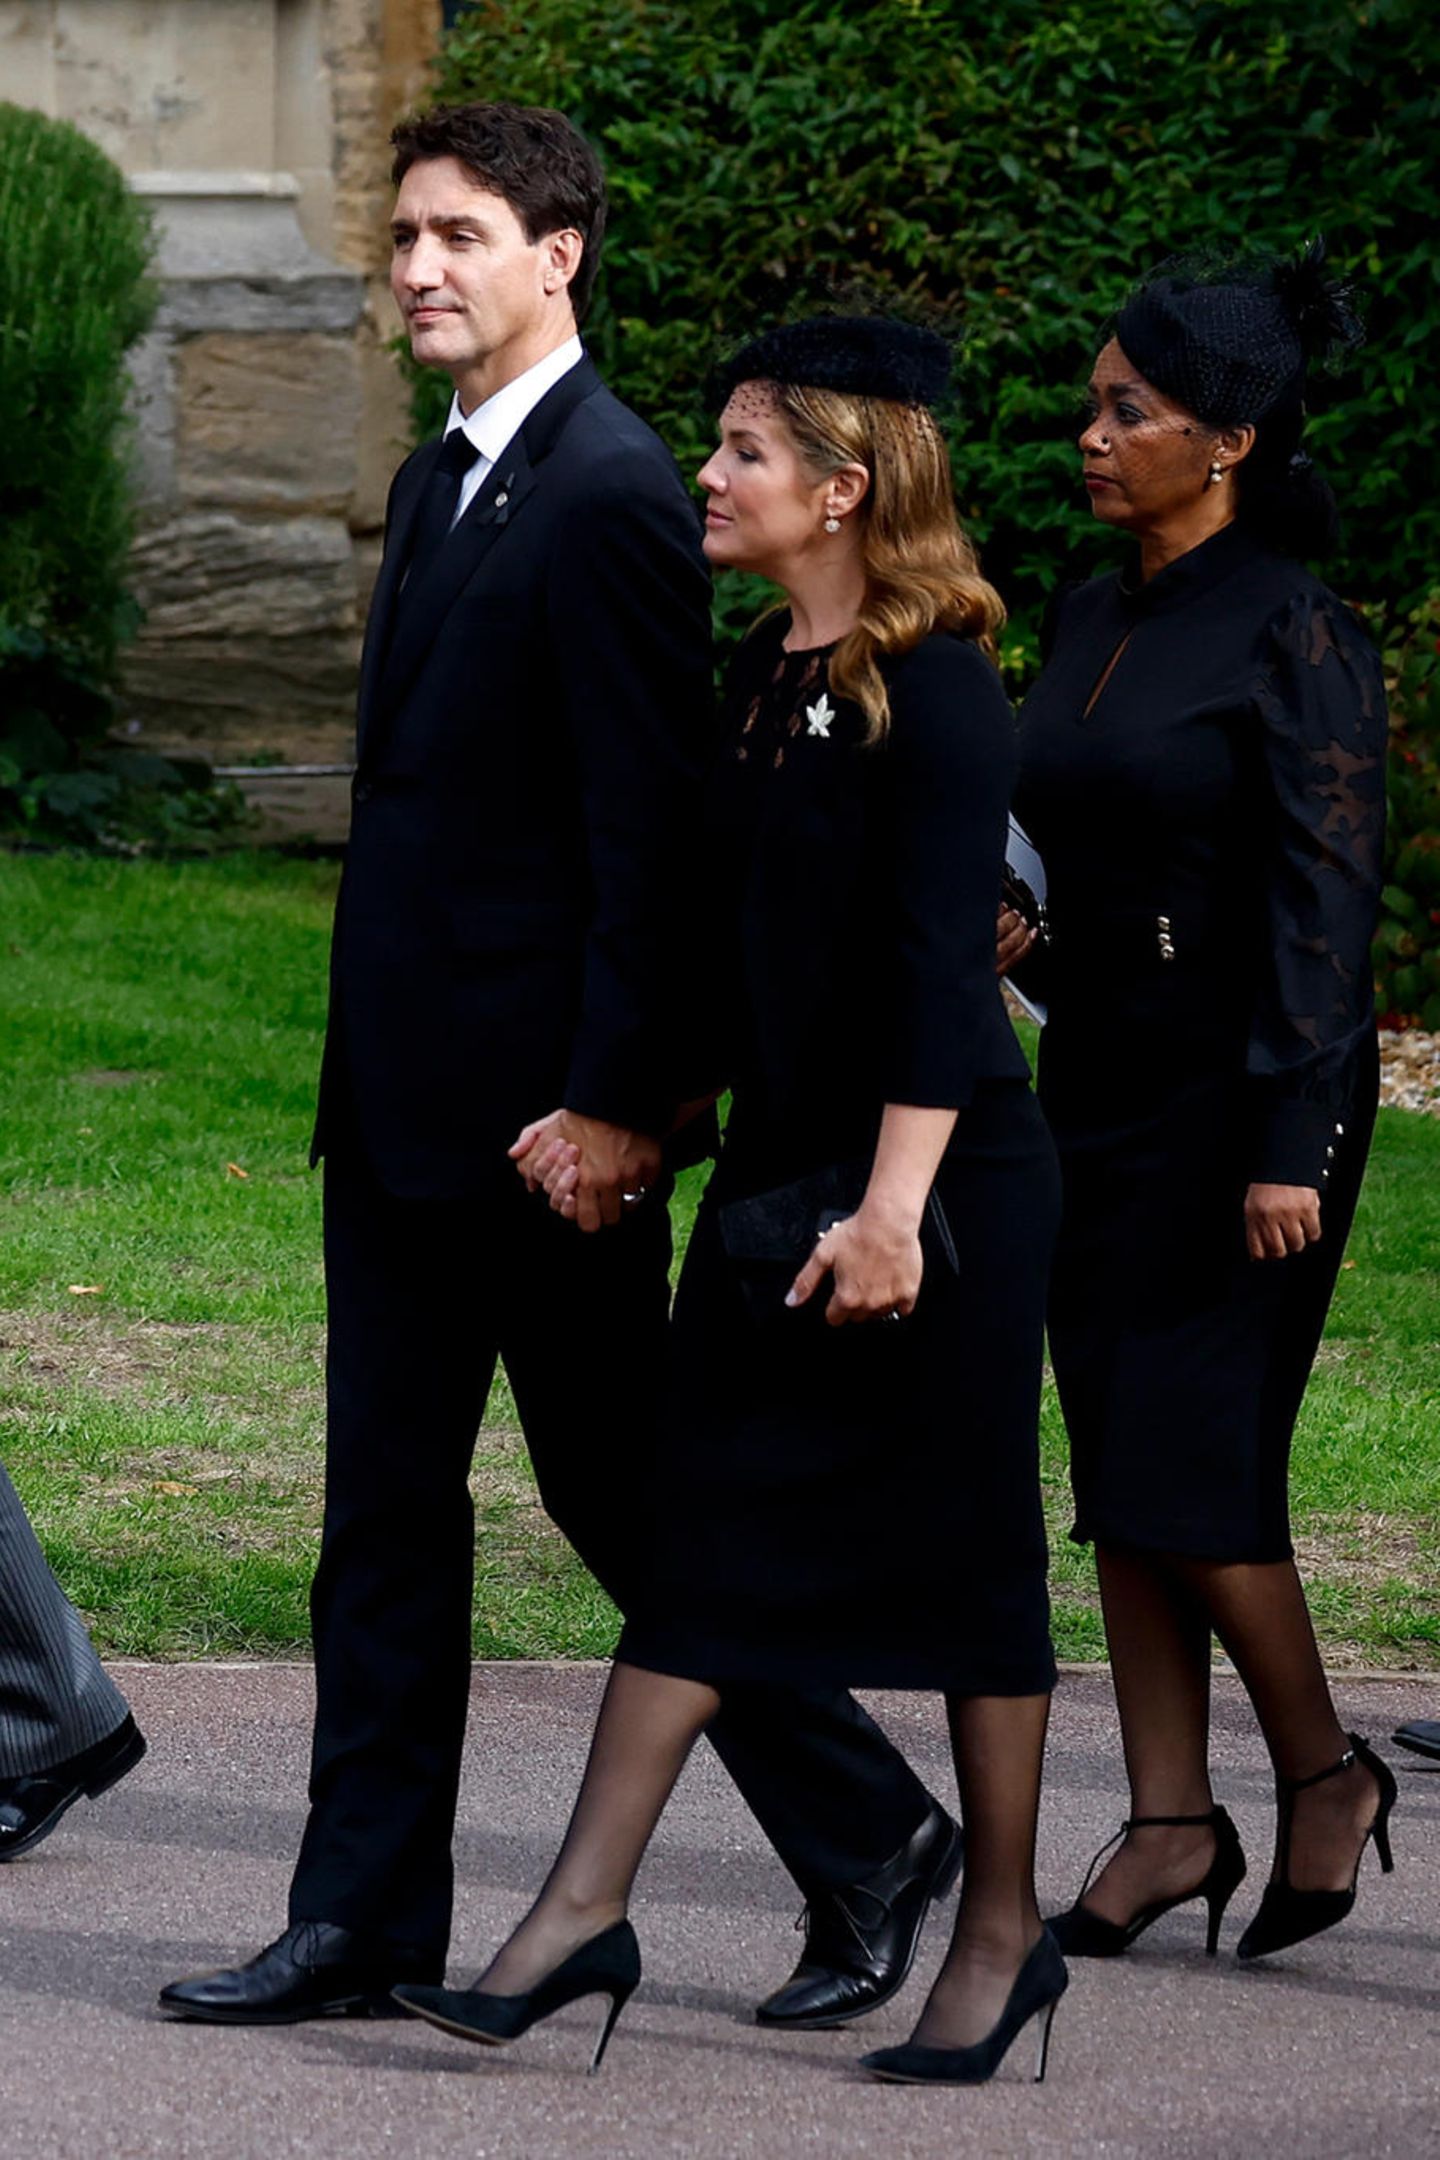 Sophie Grégoire Trudeau, die Ehefrau von Kanadas Premier Justin Trudeau, trägt ein enges, schienbeinlanges Kleid und spitz zulaufende Pumps. Die Brosche in Form eines Ahornblattes steht für ihr Heimatland. 